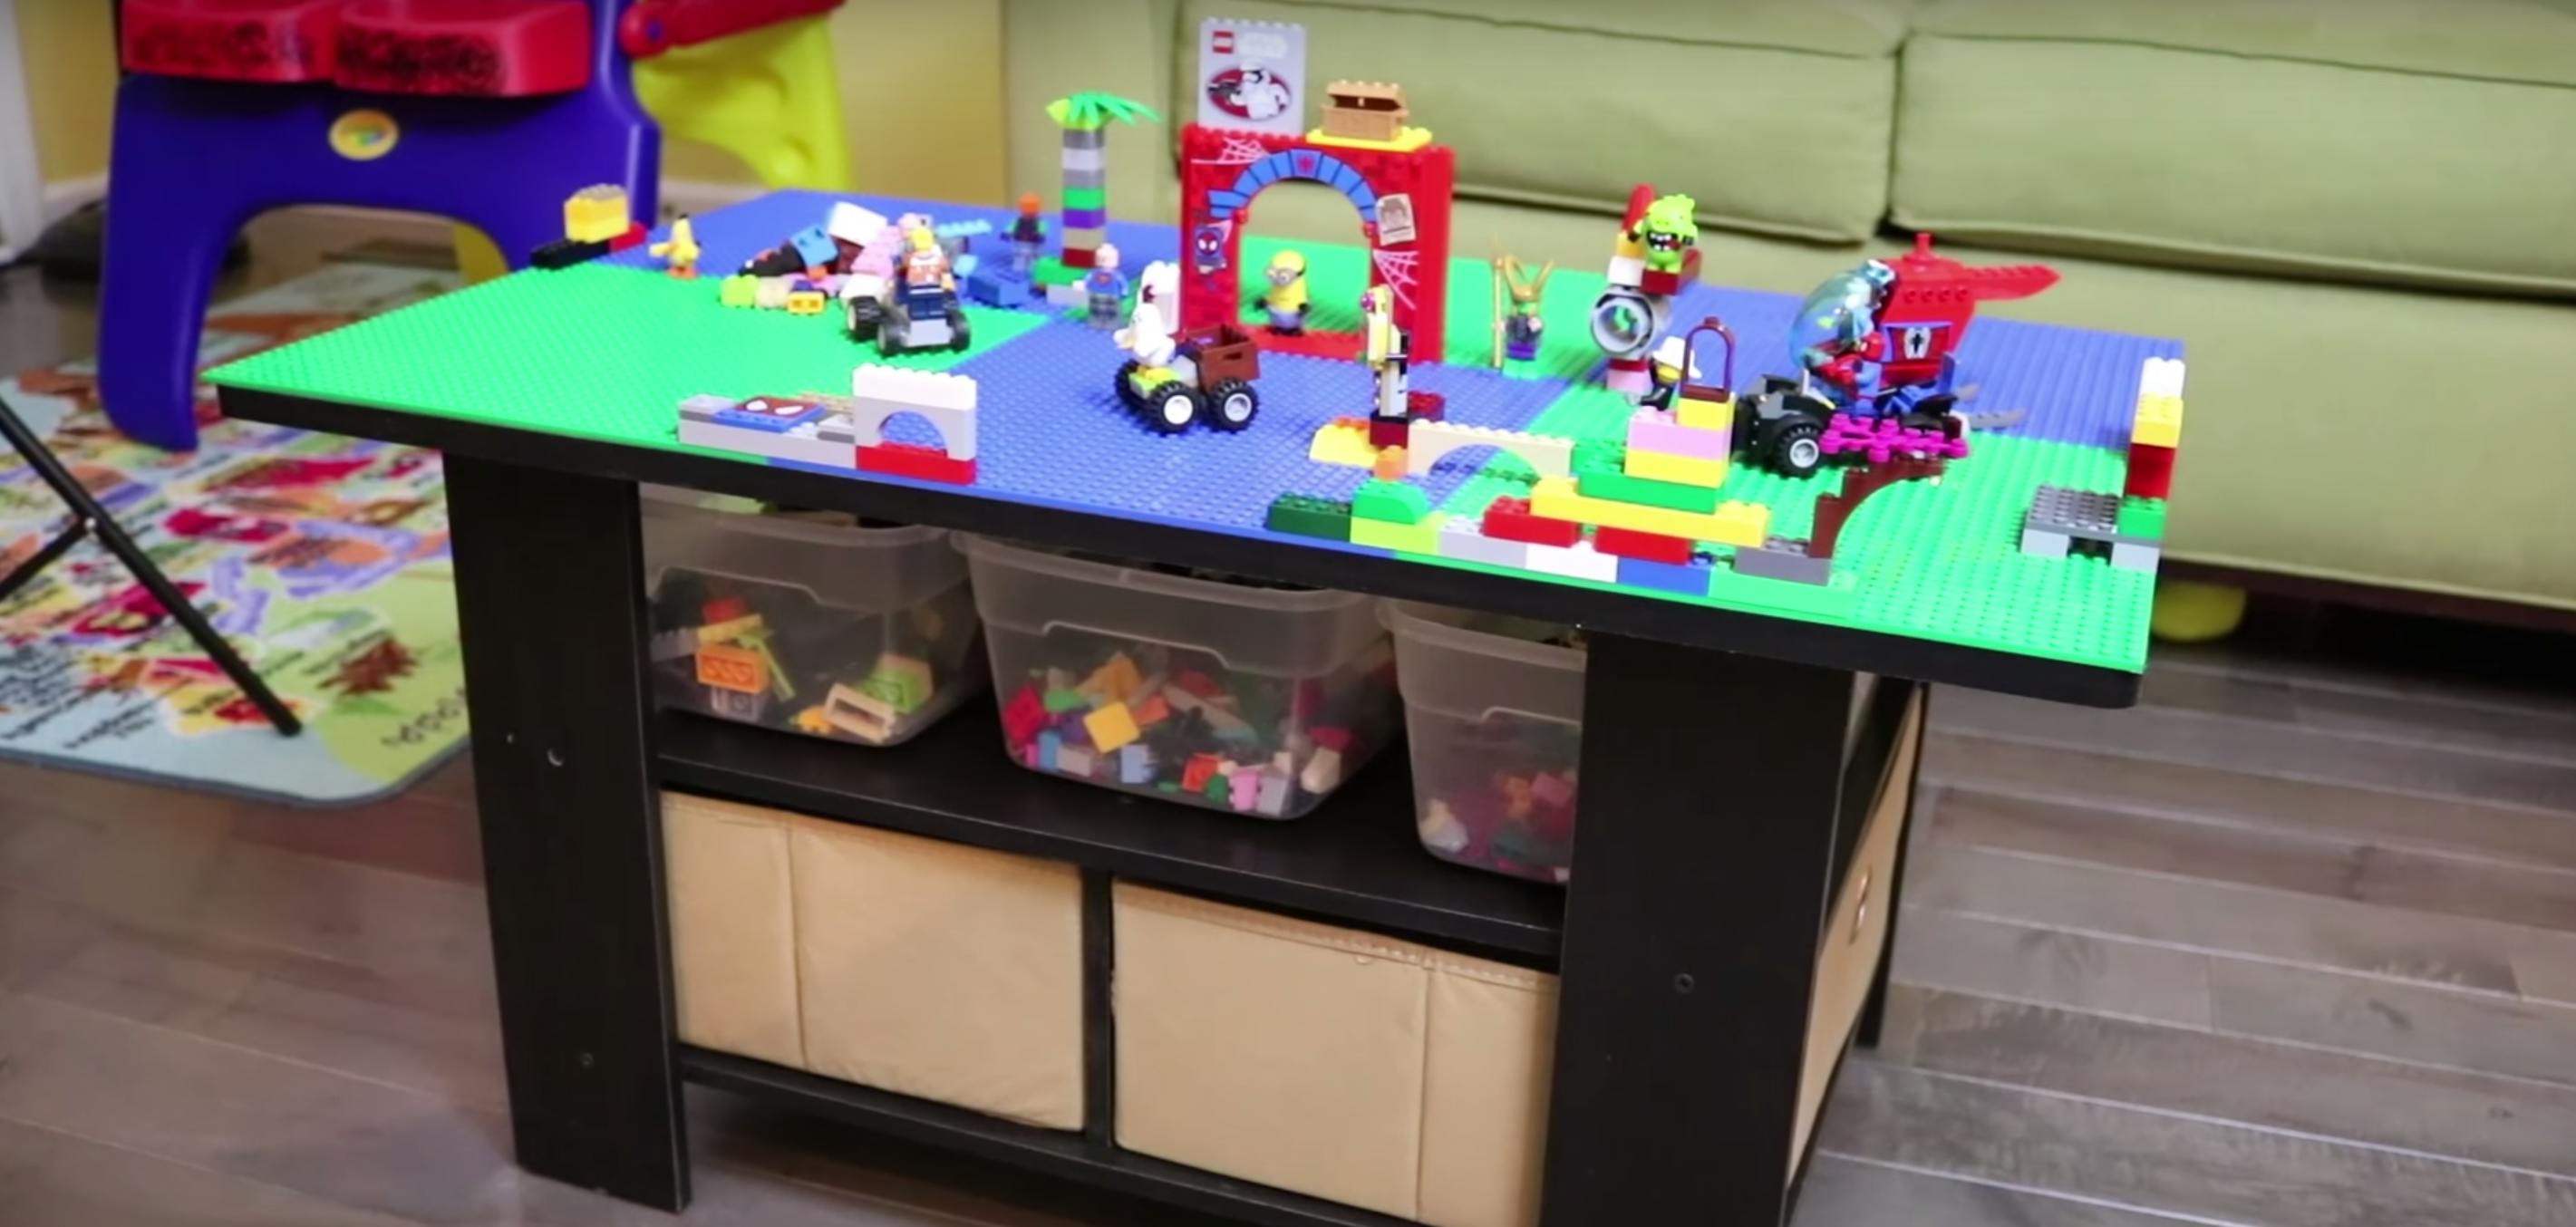 DIY LEGO Table  Lego table diy, Lego table, Spray glue